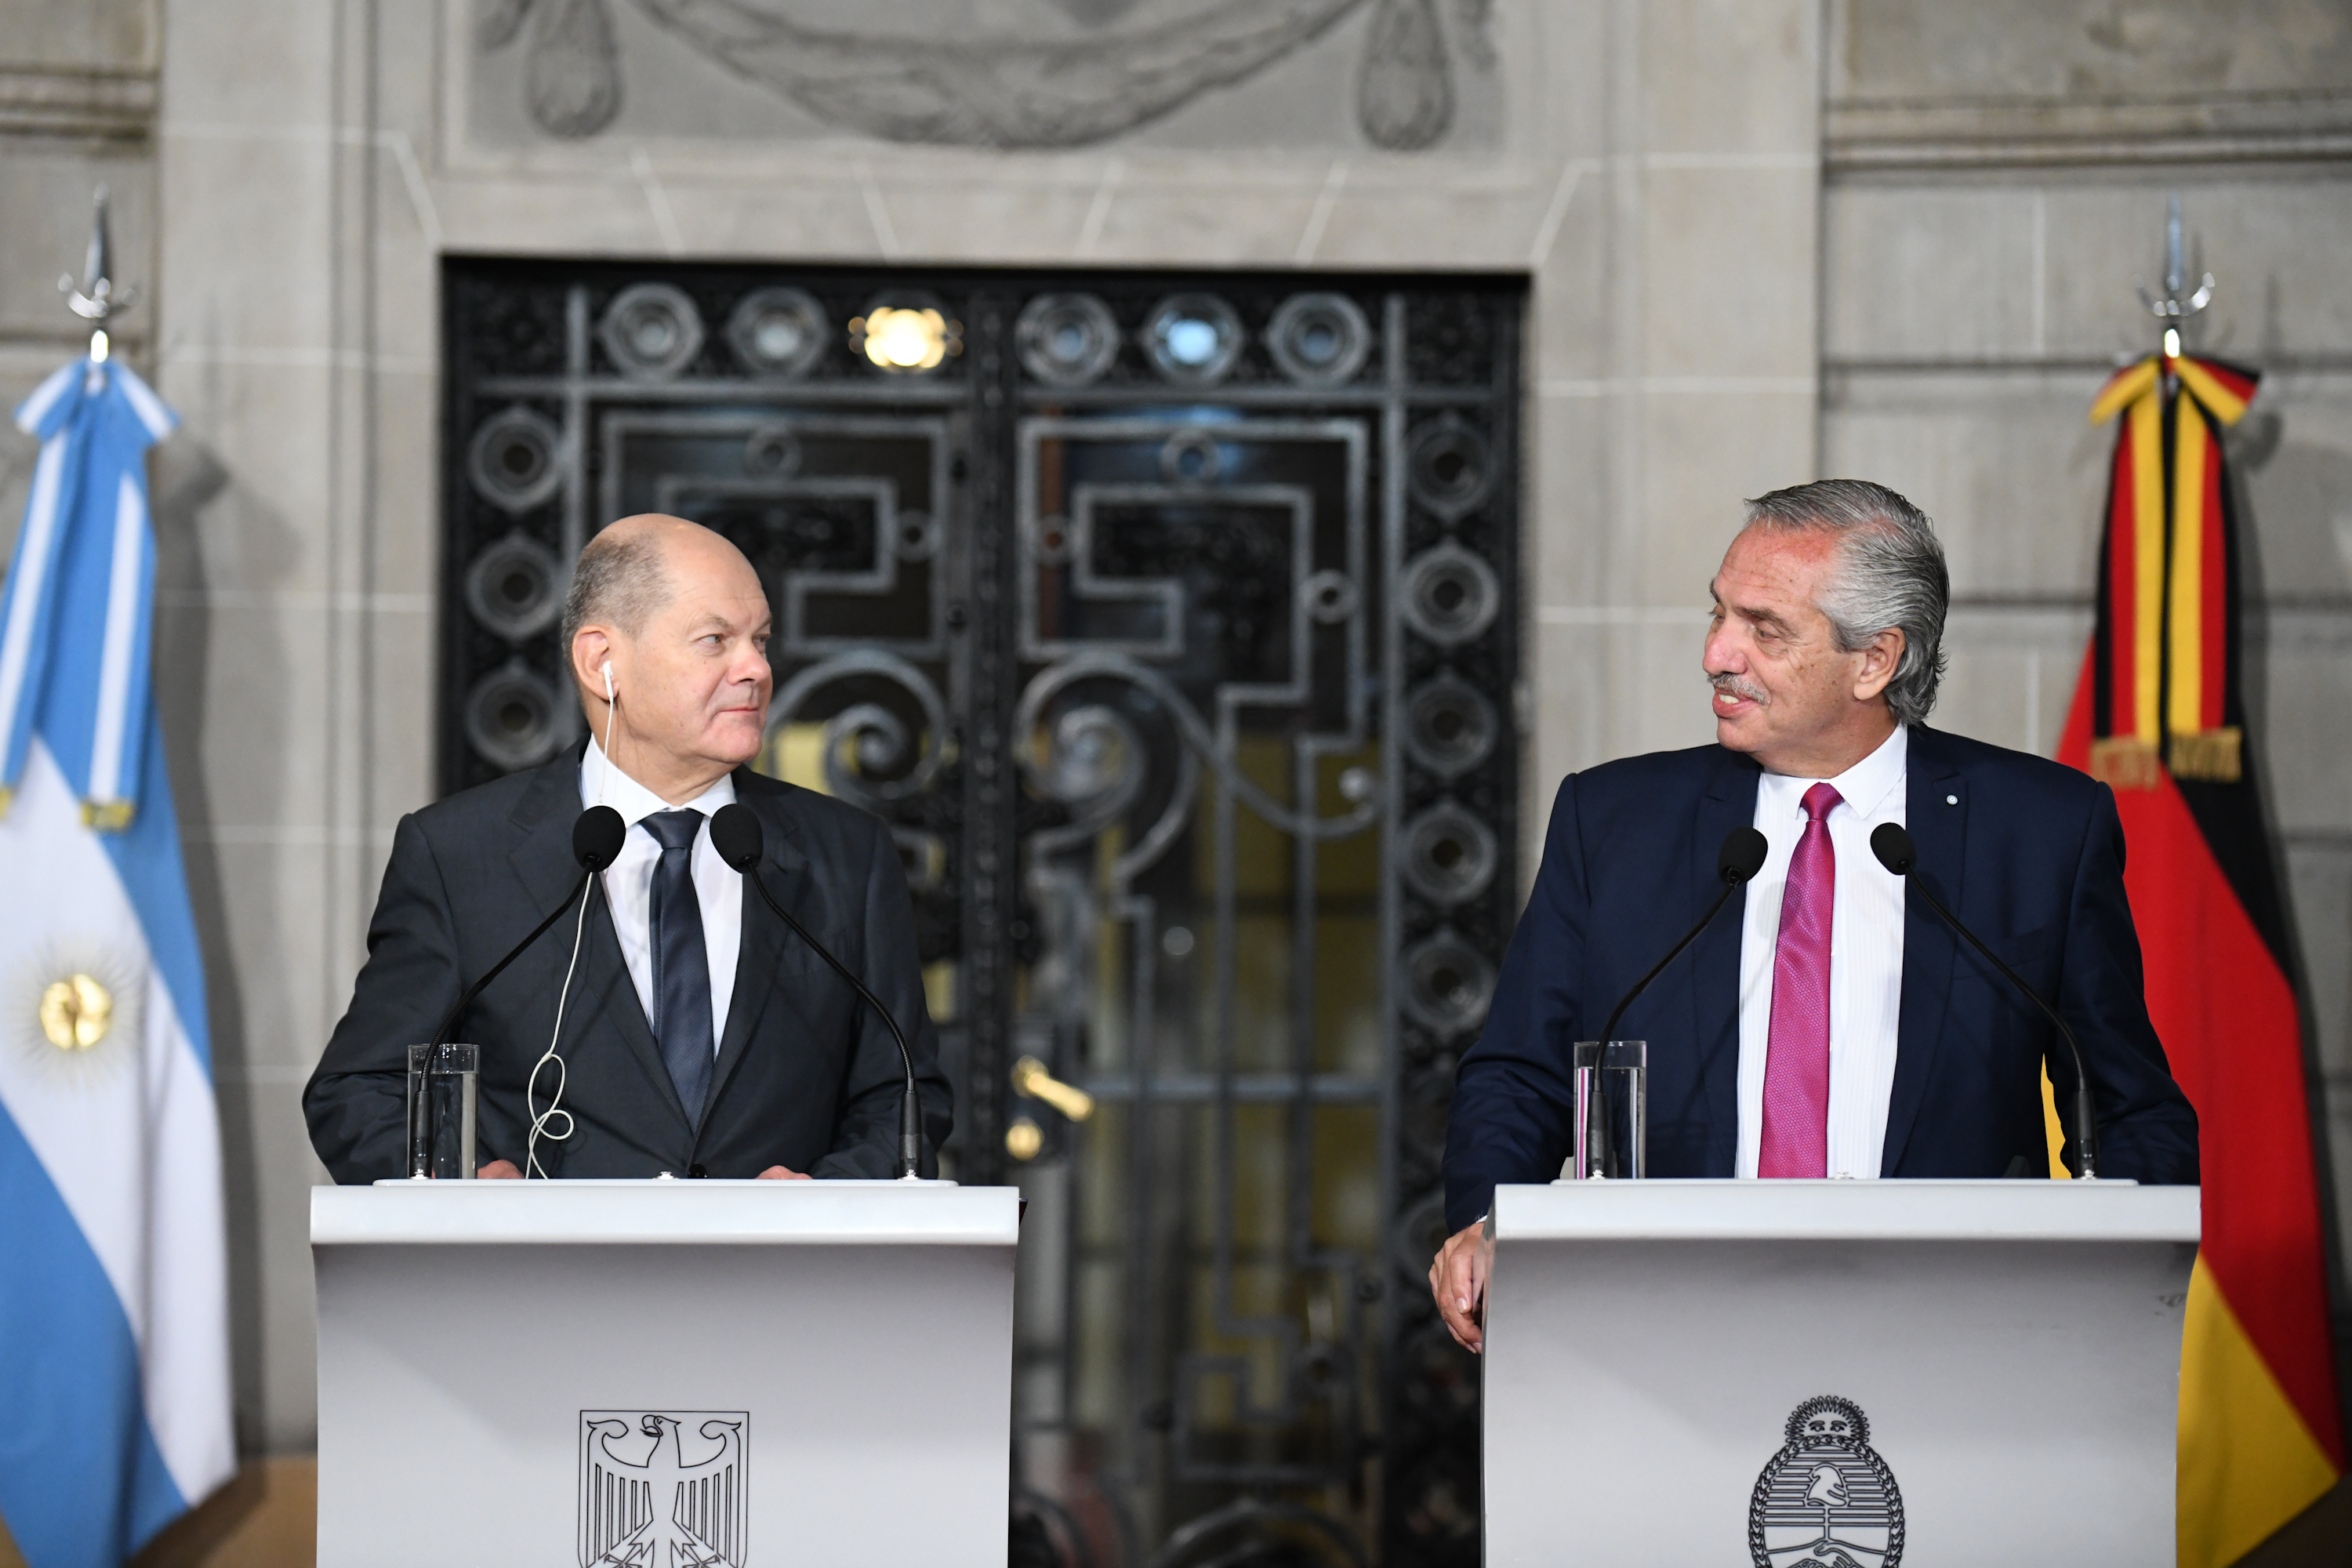 Alberto Fernández con Olaf Scholz, canciller de Alemania. El Presidente destacará la inserción de Argentina en la agenda internacional (Fotos: Casa Rosada)